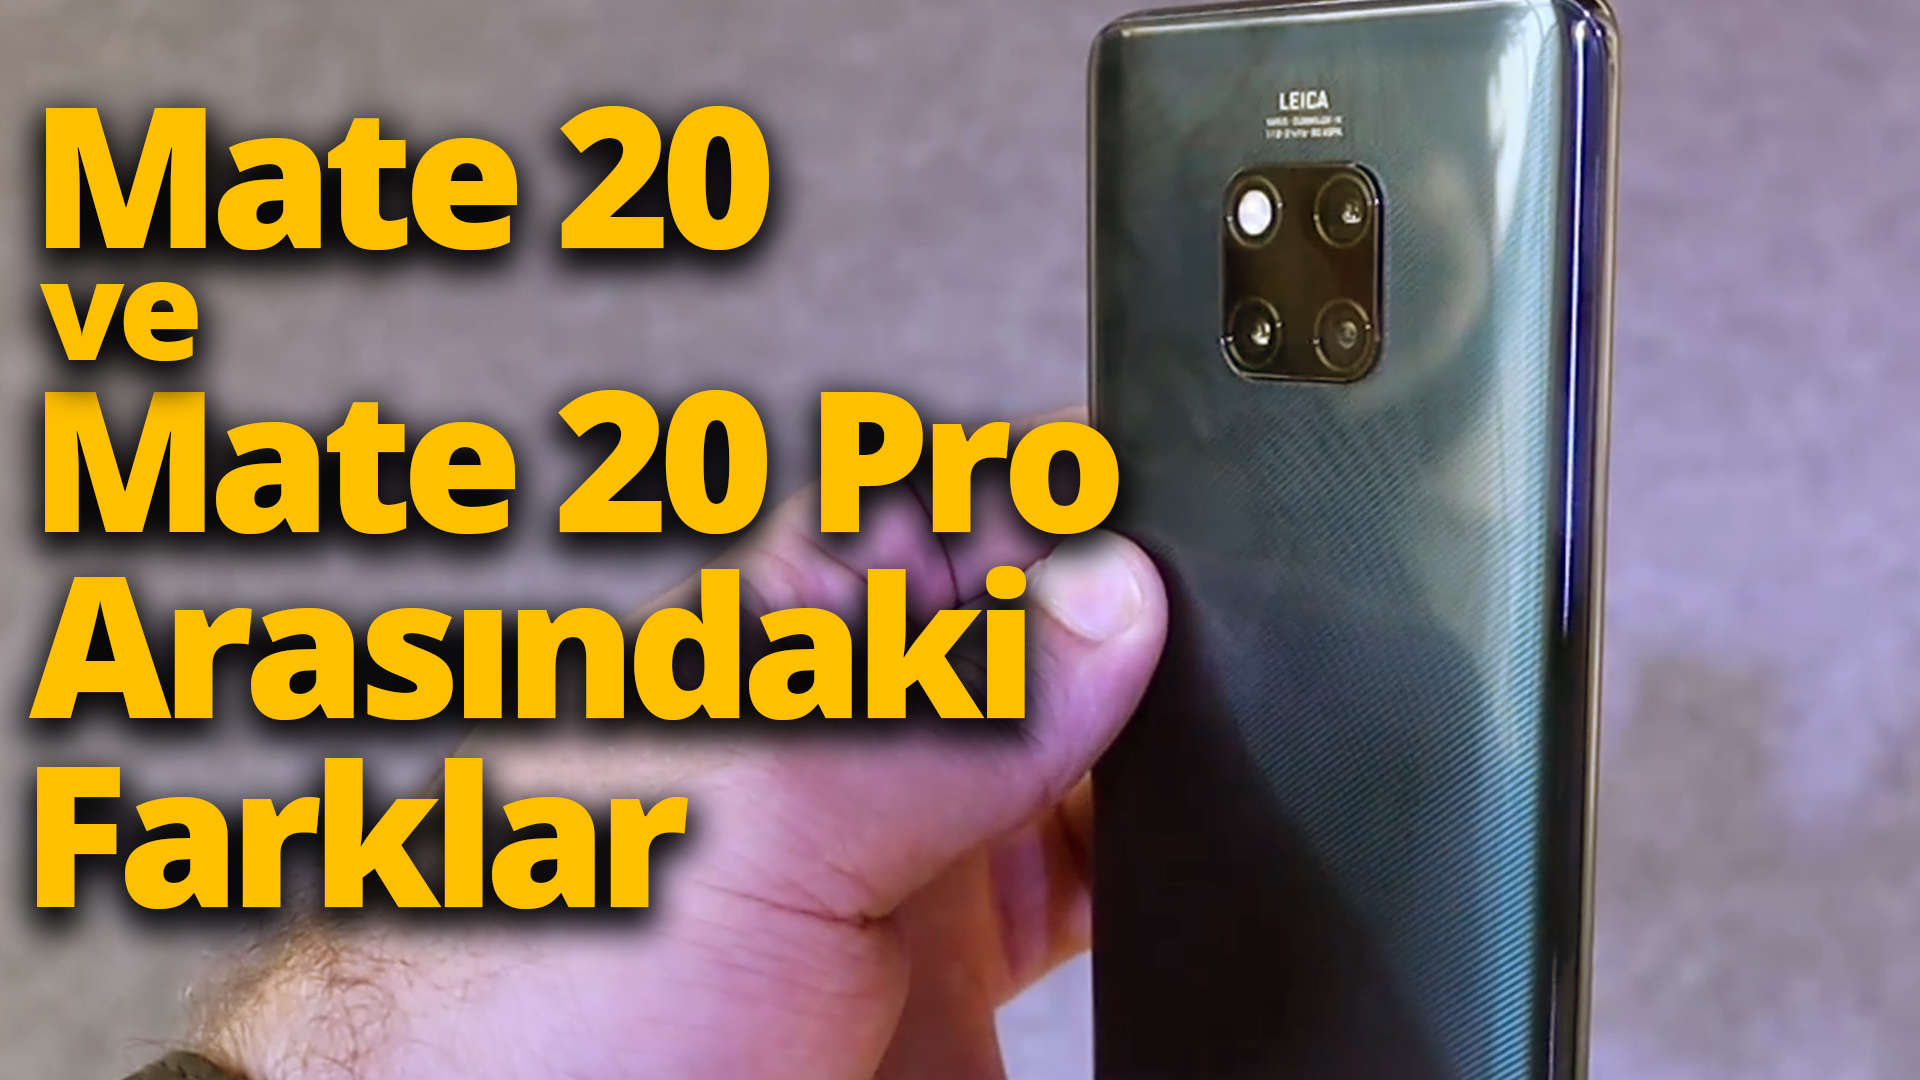 Huawei Mate 20 Pro Mate 20 ve Mate 20 Pro Mate 20 vs Mate 20 Pro